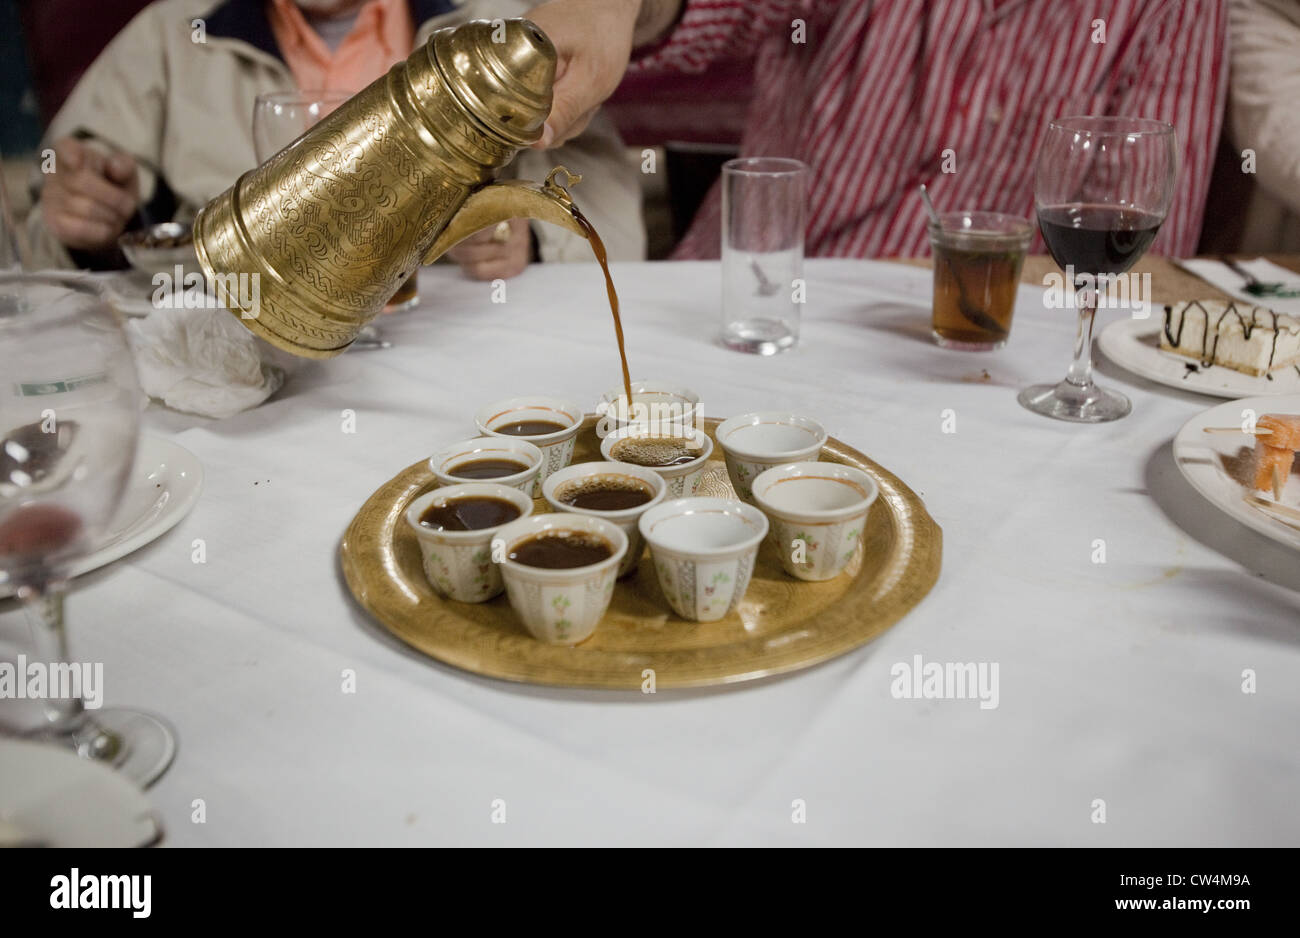 Une cafetière de style turc laiton pouring coffee en tasses après un repas moyen-orientale à Abu Gosh, Israël Banque D'Images